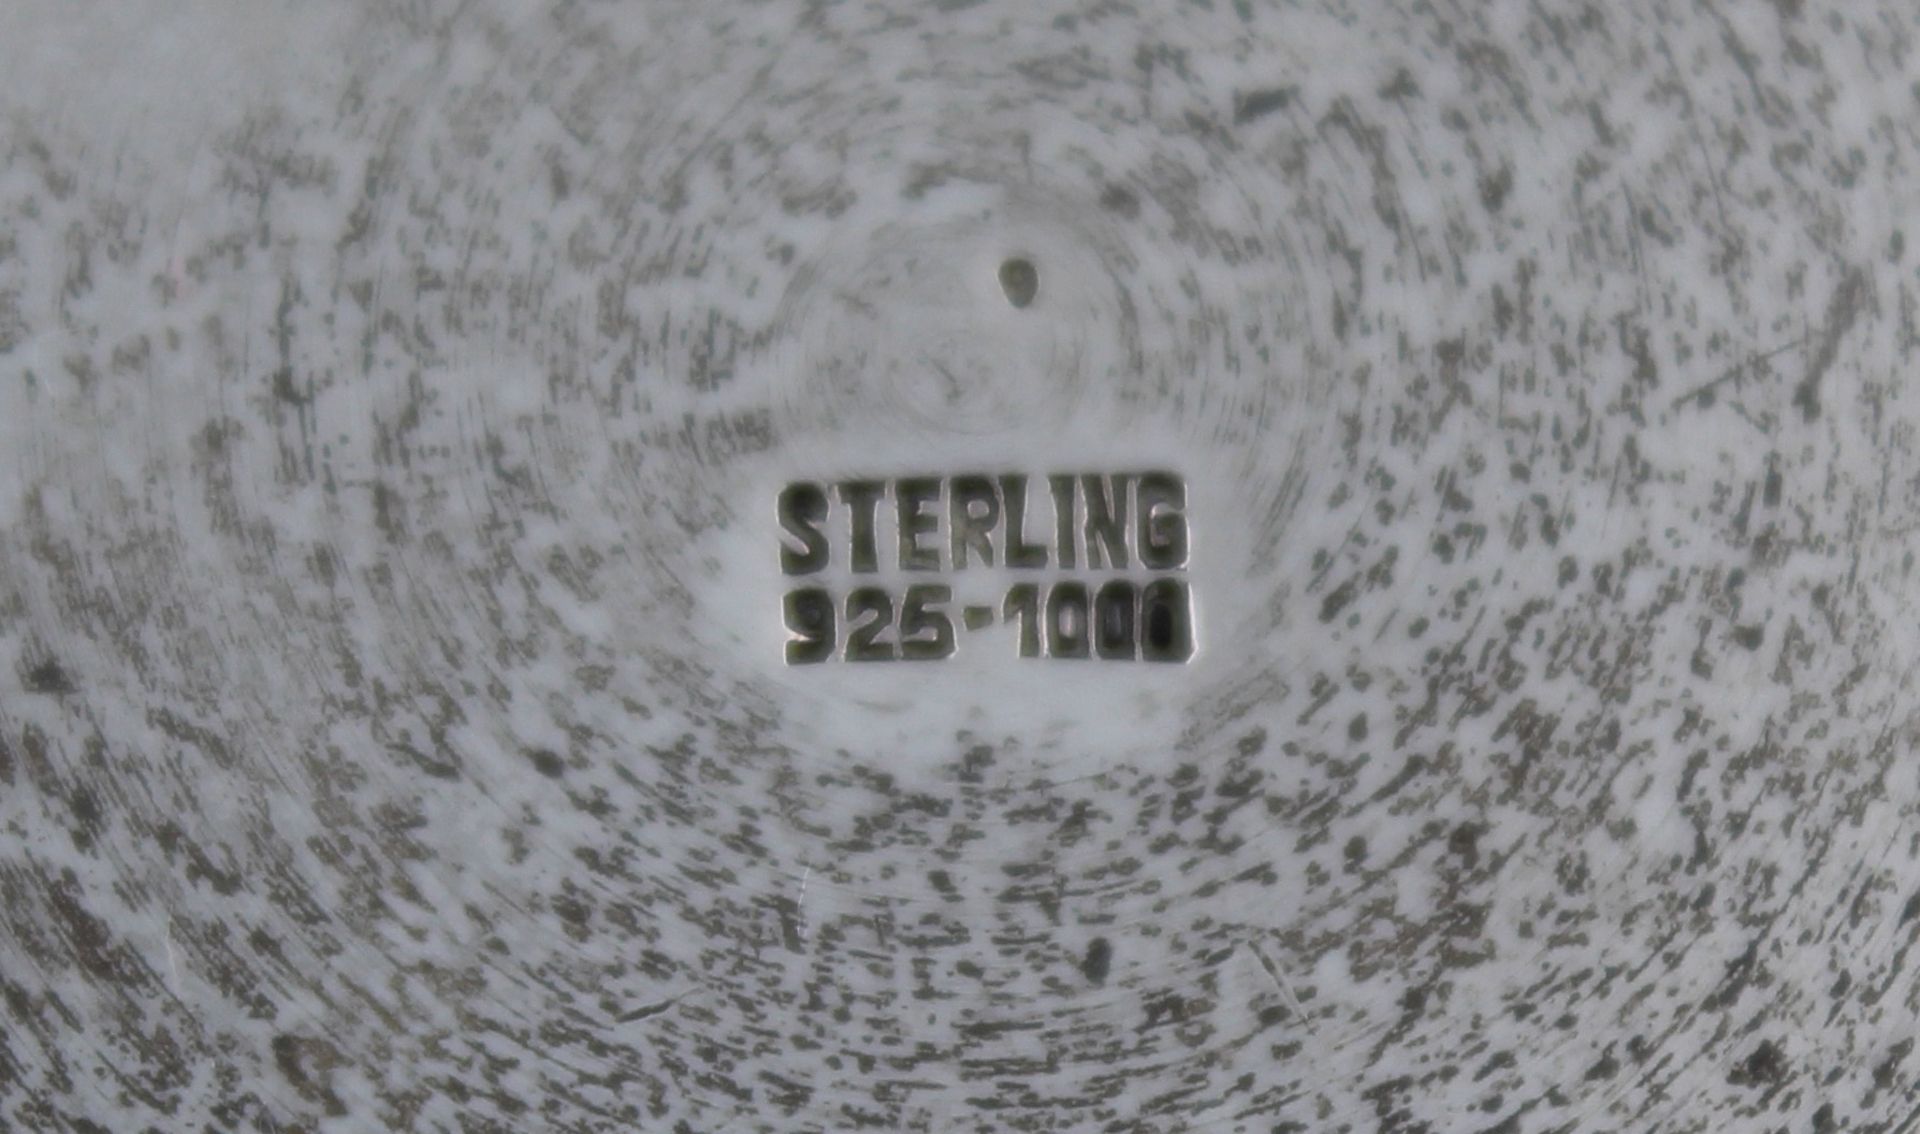 Terrine. Silber 925. 1652 Gramm.30 cm x 25 cm. Gepunzt ''STERLING 925 - 1000''.Tureen. Silver 925. - Bild 3 aus 12